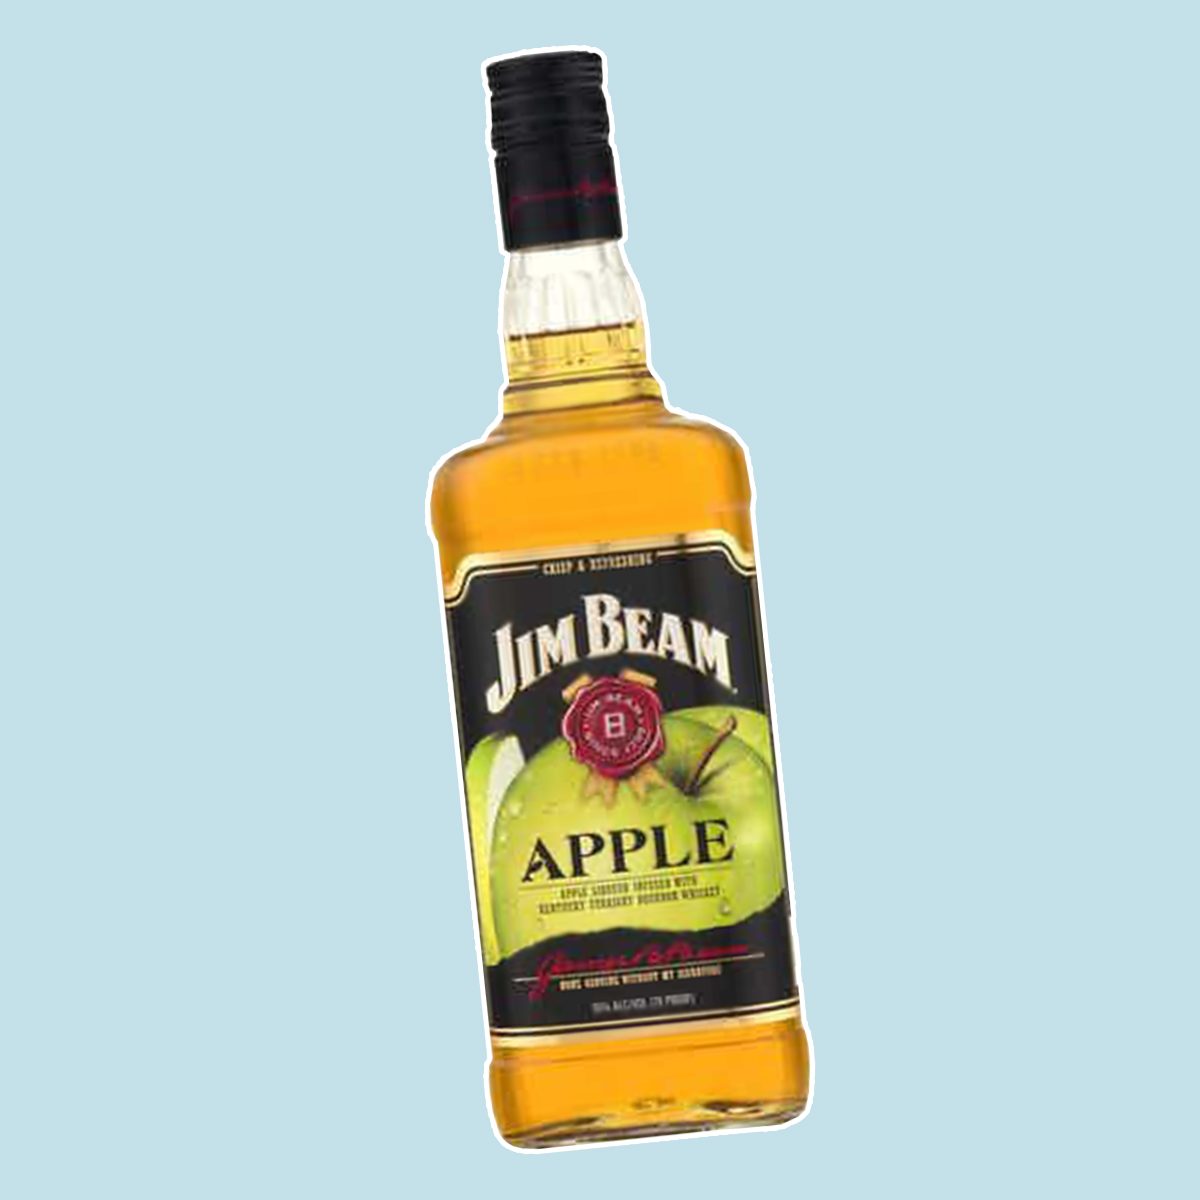 10 Best Apple Whiskey Brands | Taste of Home